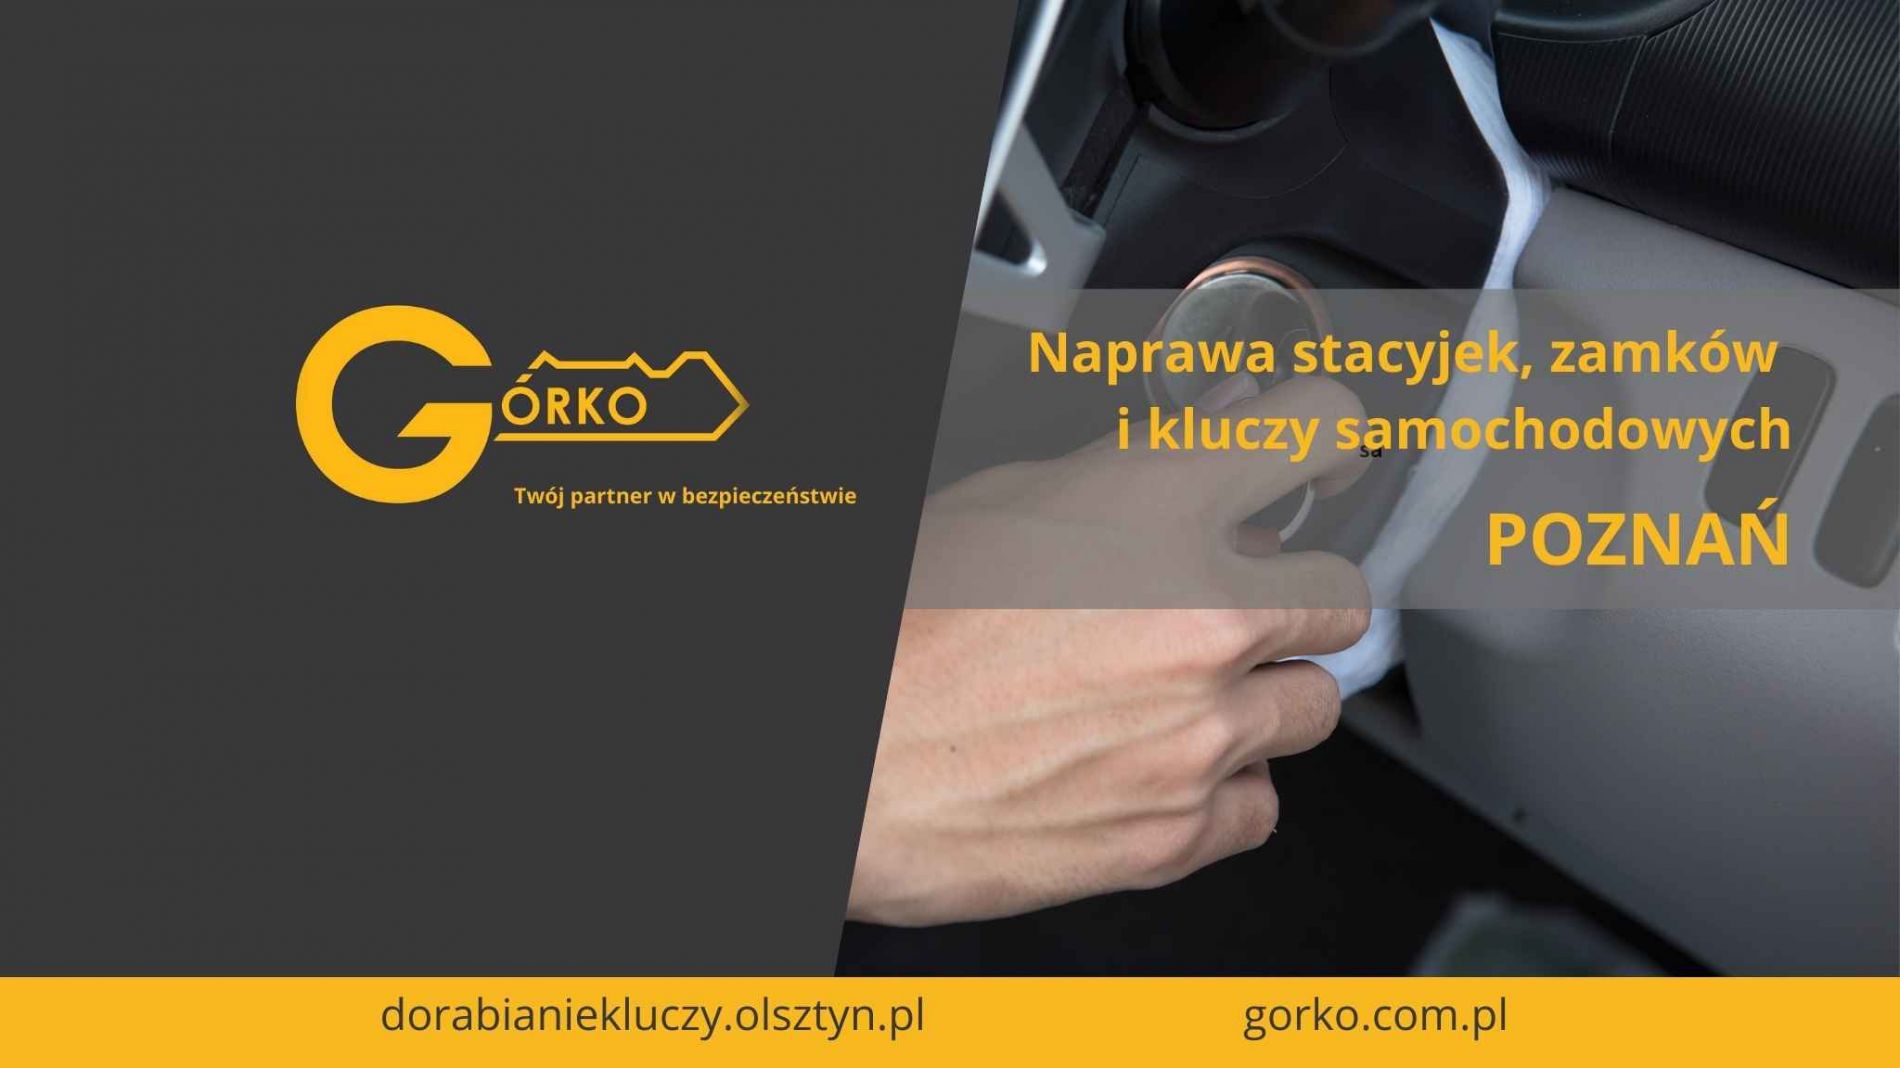 Naprawa stacyjek, zamków, kluczy samochodowych oraz dorabianie kluczy nietypowych – Poznań (Usługa zdalna)